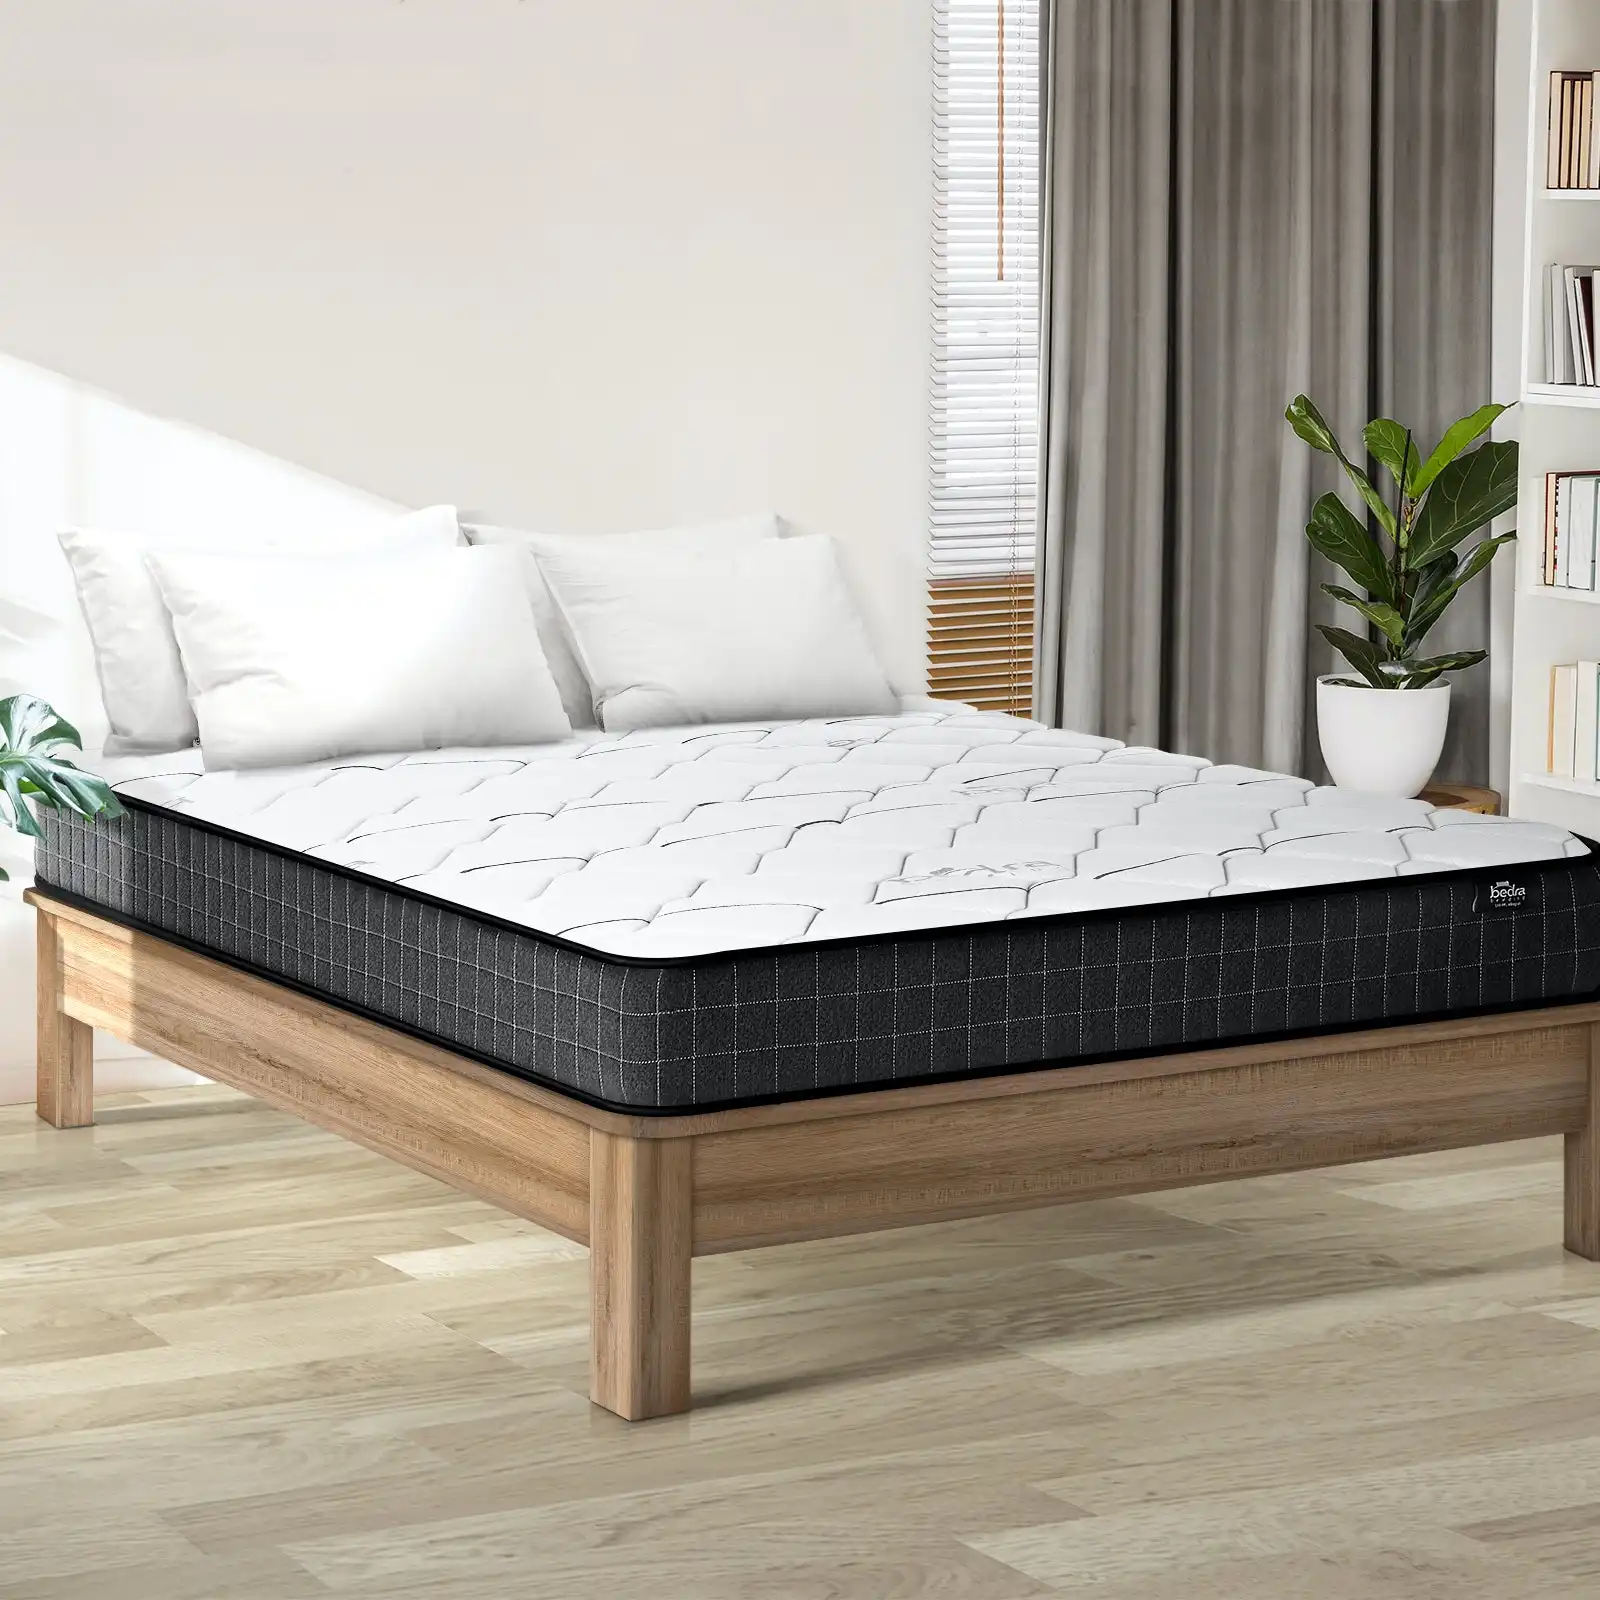 Bedra Queen Mattress Bed Luxury Medium Firm Foam Bonnell Spring 16cm